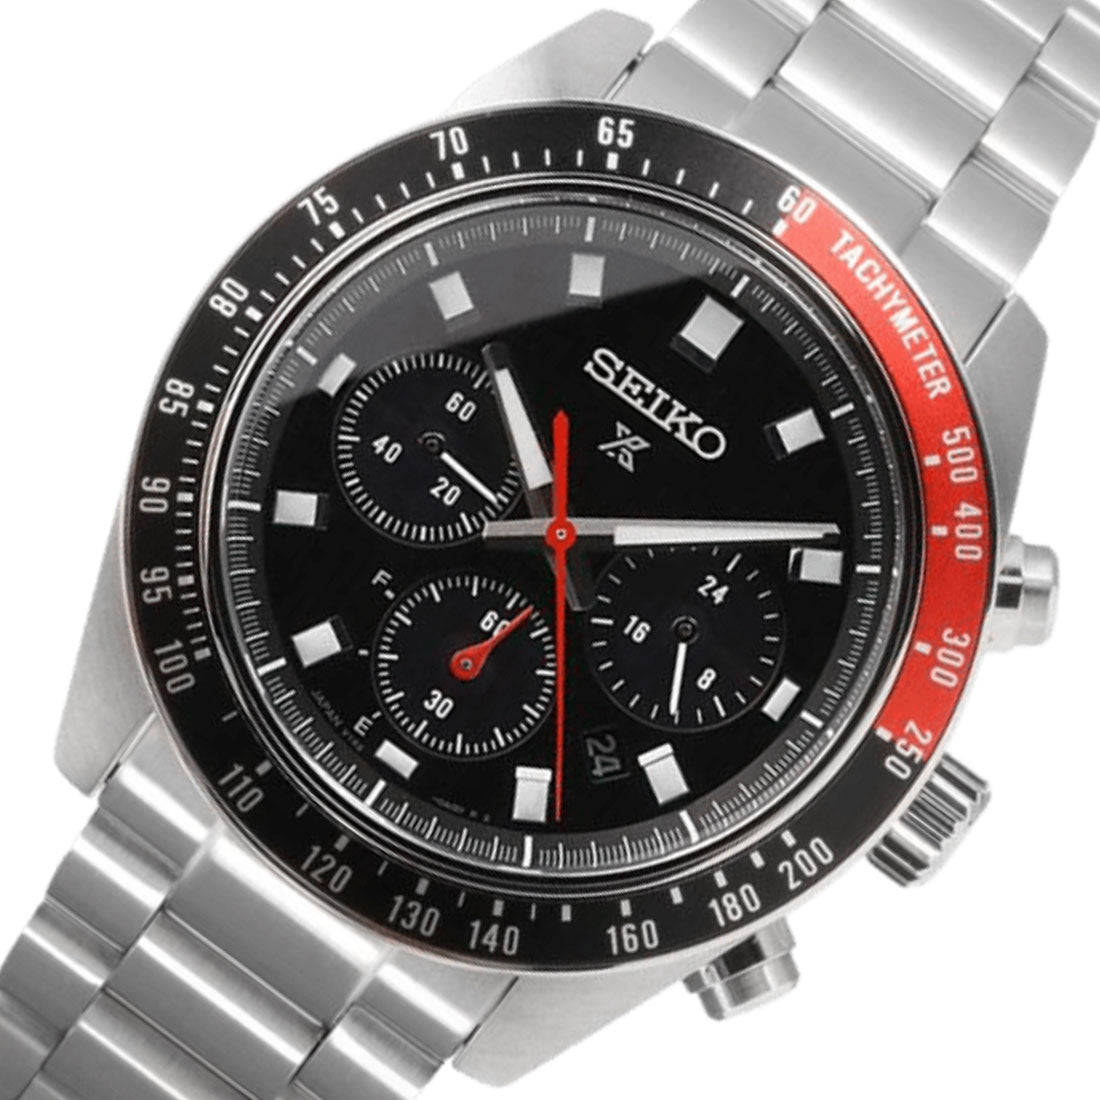 Seiko Prospex SpeedTimer SBDL099 Chronograph Solar Black Dial Watch -Seiko